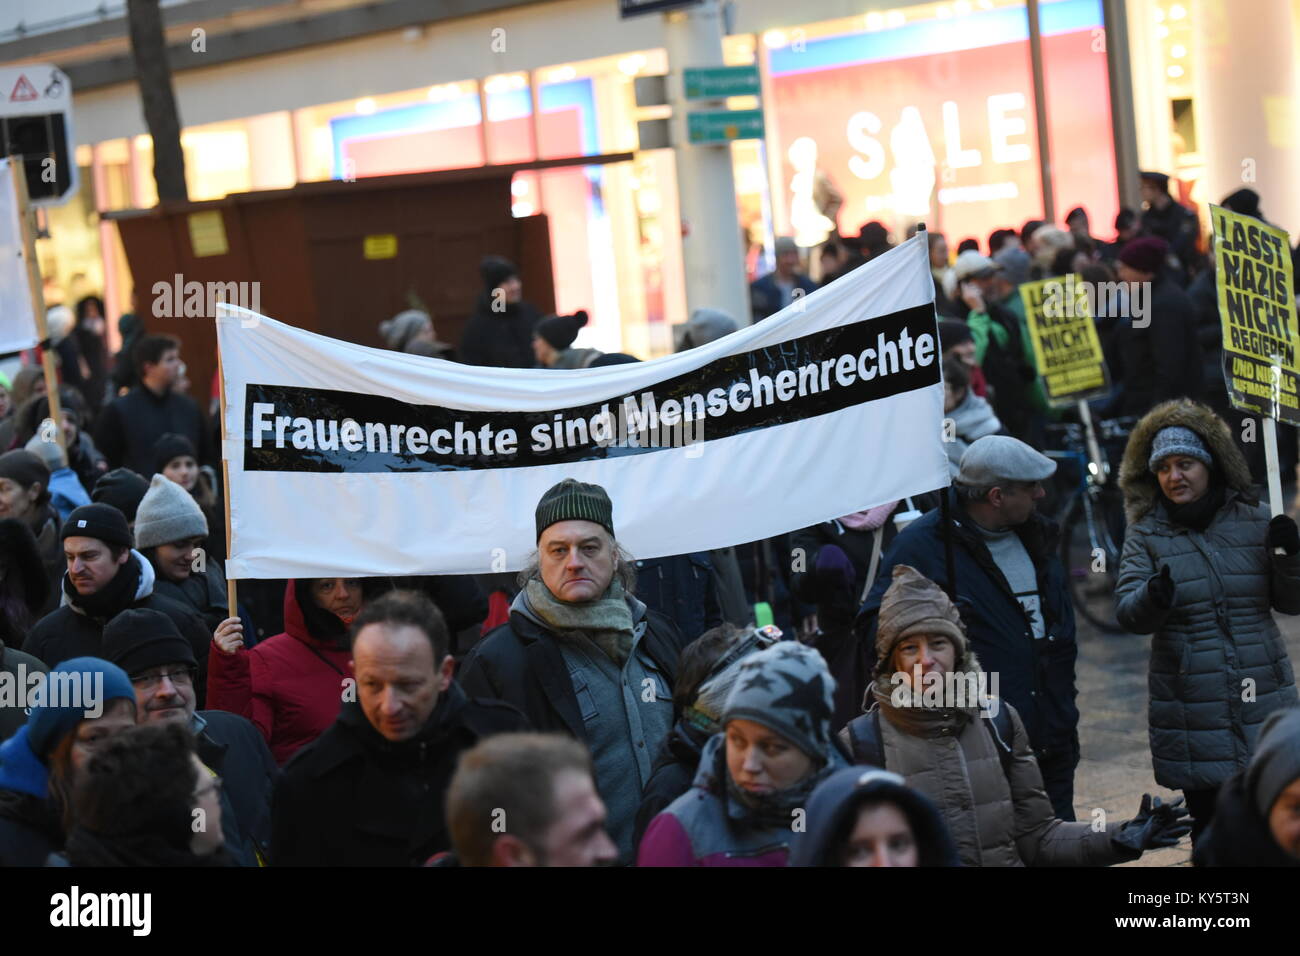 Viena, Austria. 13 Jan, 2018. Los manifestantes llevaban una pancarta durante una manifestación antigubernamental. El signo se lee "la mujer son derechos humanos". Crédito: Vicente Sufiyan/Alamy Live News Foto de stock